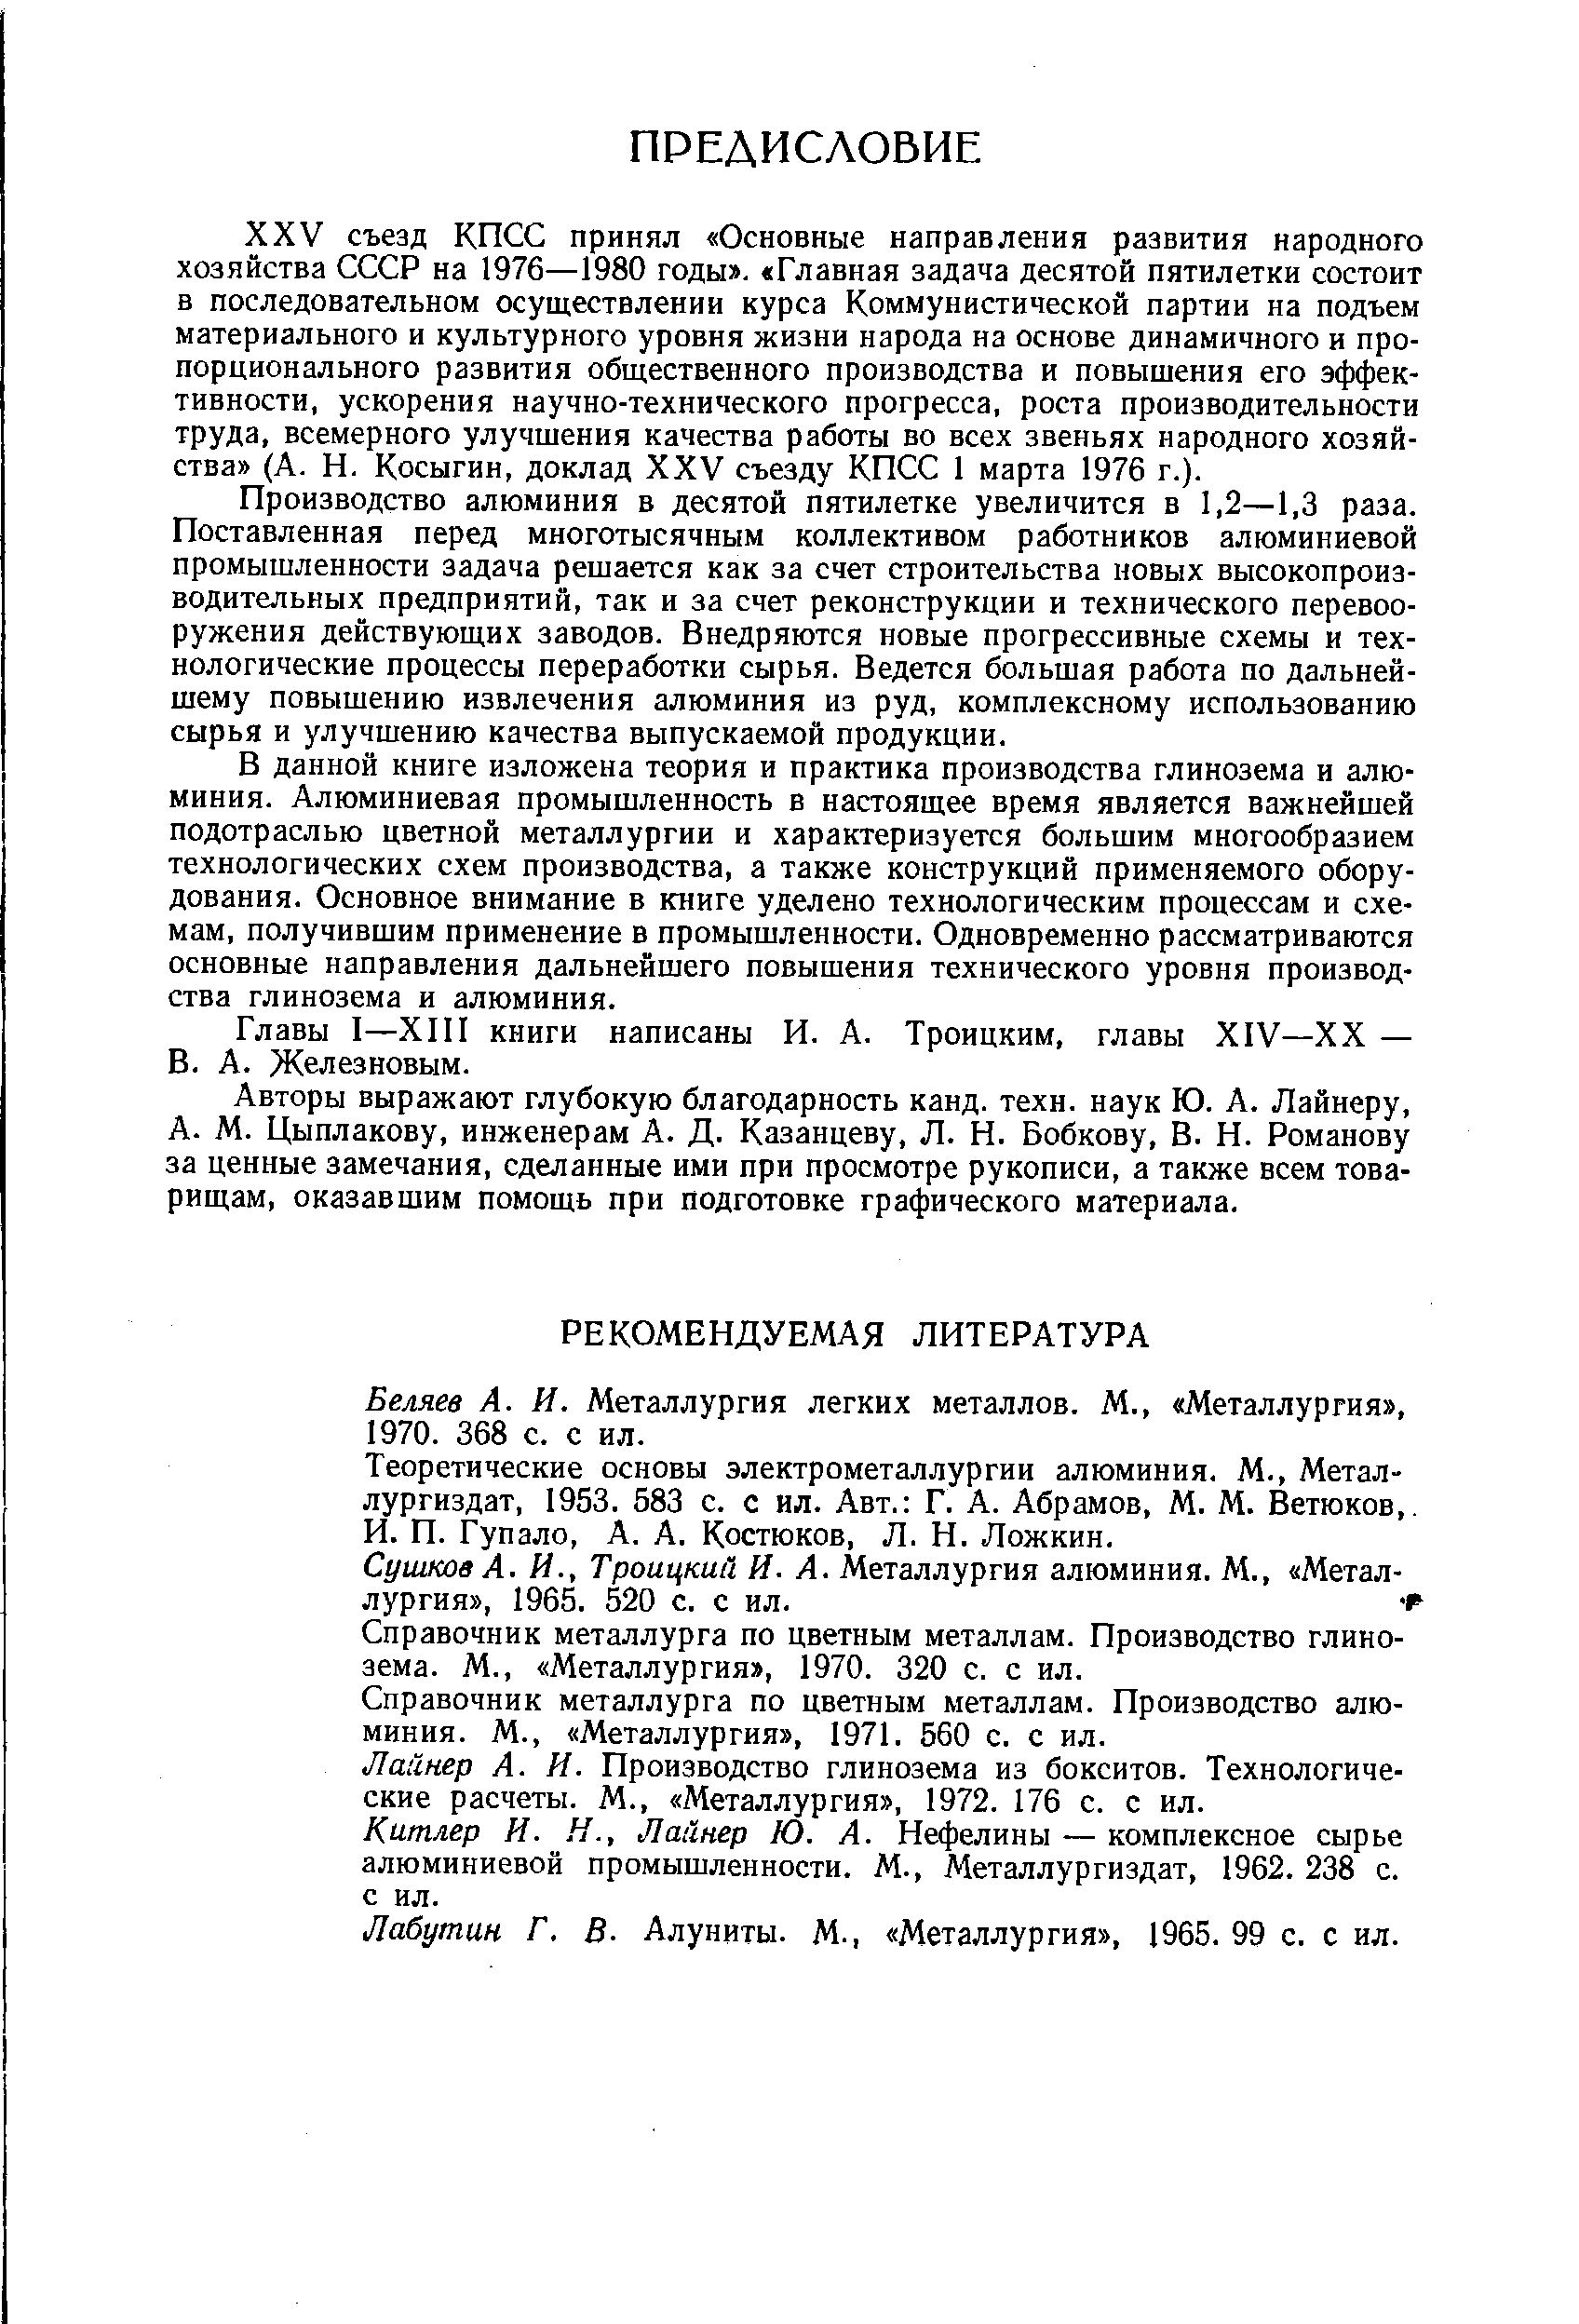 Беляев А. И. Металлургия легких металлов. М., Металлургия , 1970. 368 с. с ил.
